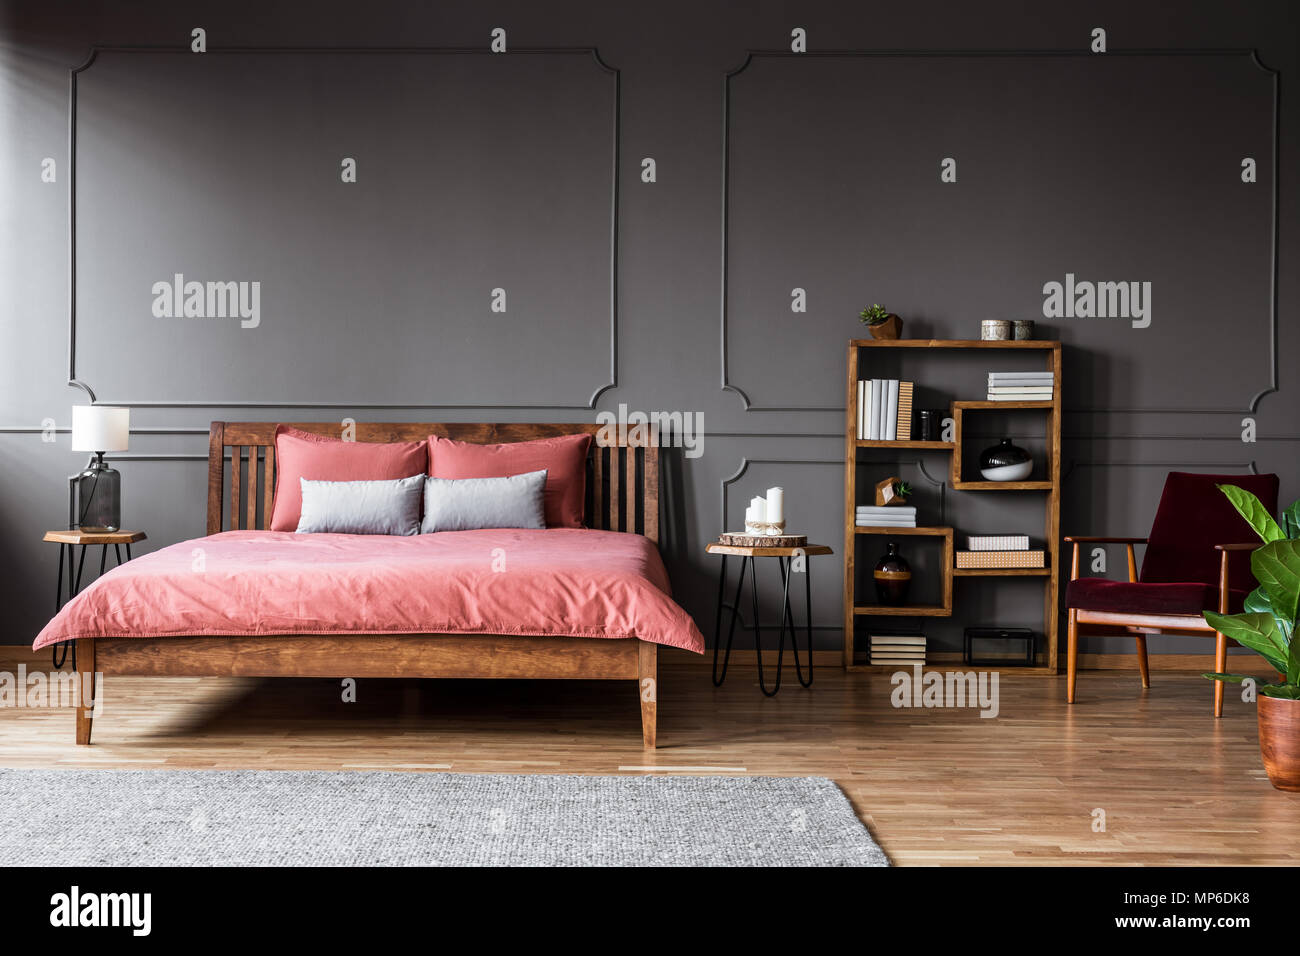 Real Photo von einem geräumigen Schlafzimmer Innenraum mit Rosa Bett stehend gegen schwarze Wand mit Formteils neben einer kreativen Bücherregal und roten Sessel Stockfoto